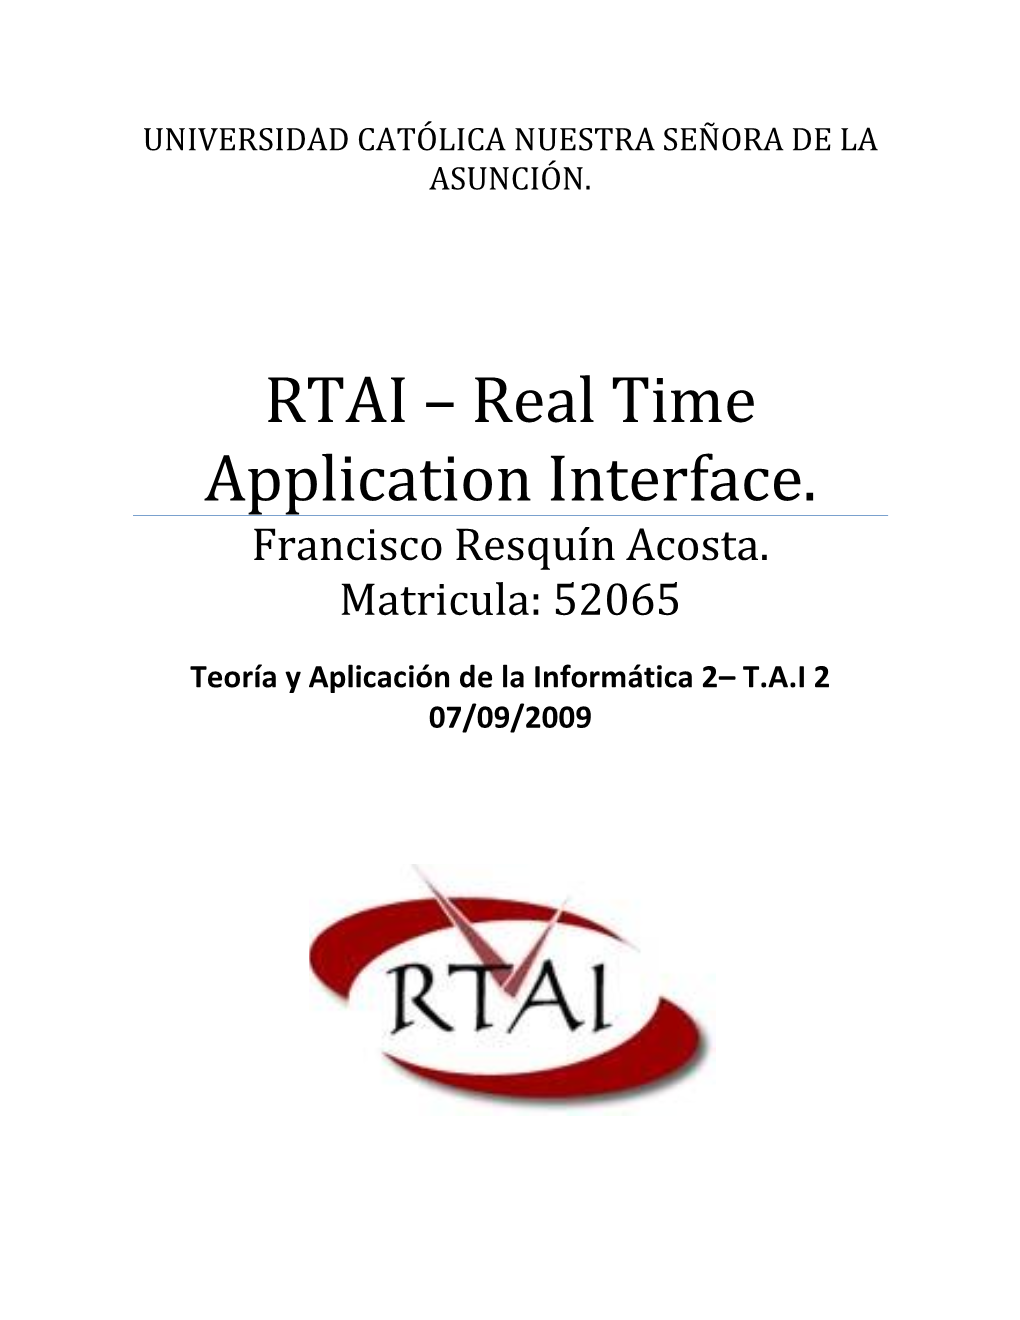 RTAI – Real Time Application Interface. Francisco Resquín Acosta